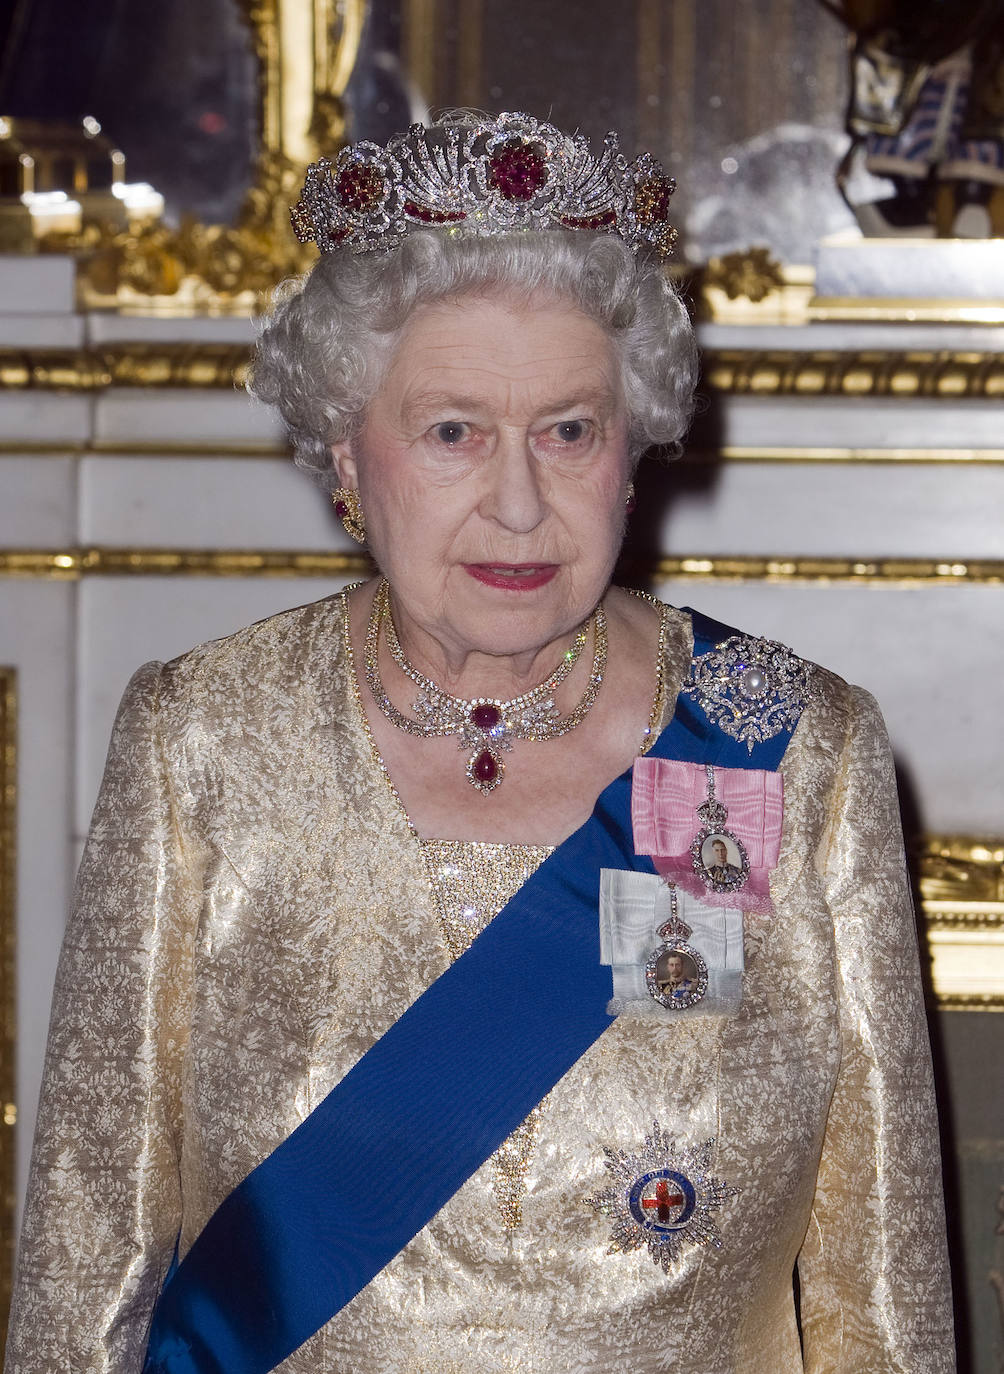 Otra de las joyas más exclusivas de la Reina Isabel de Inglaterra es la tiara de rubí birmano creada en 1973 por Garrad & Co. con oro y rubíes. 